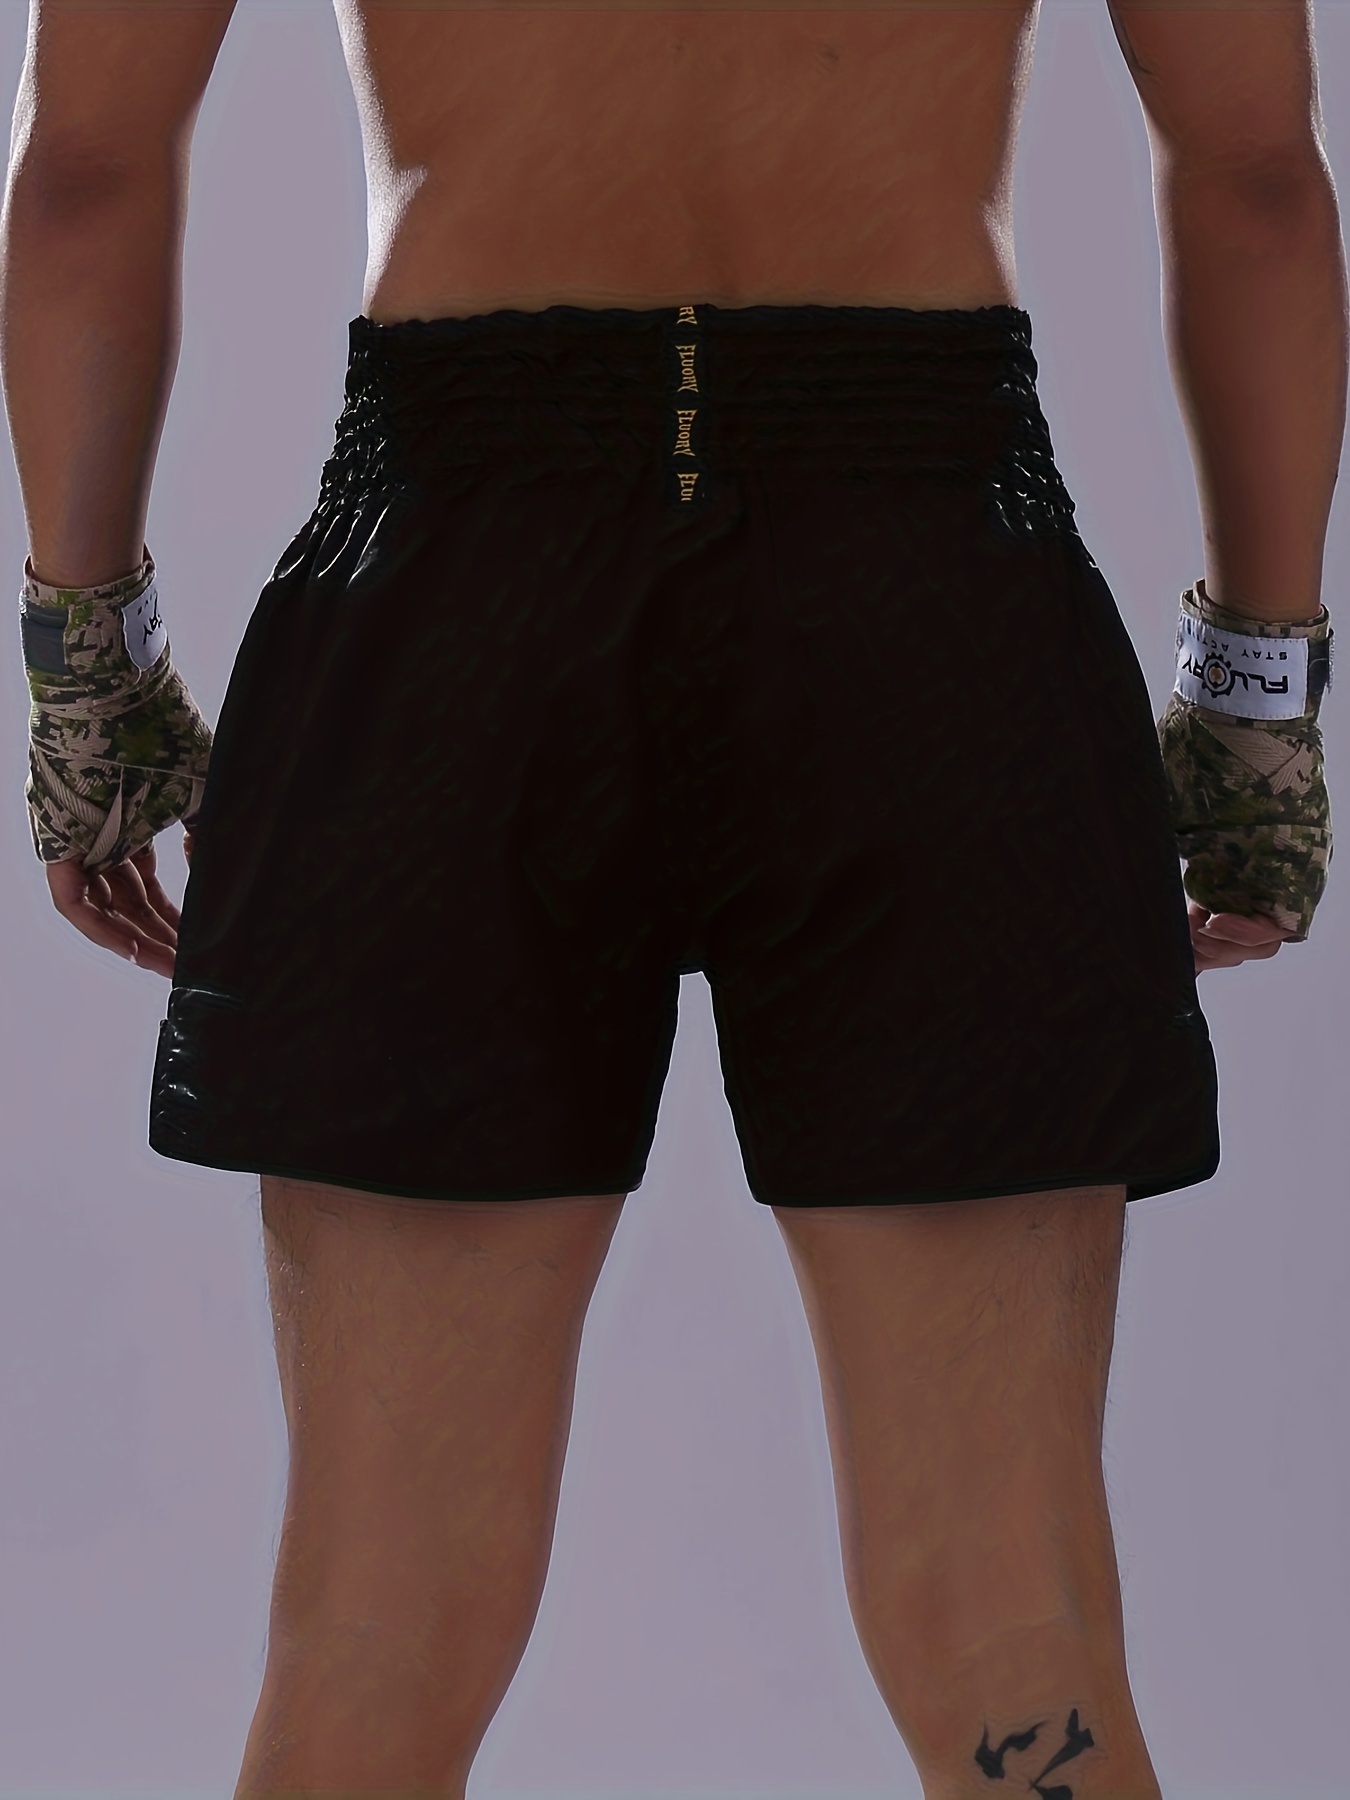 FLUORY Pantalones Cortos Muay Thai, Pantalones Cortos Deportivos Con  Bordados Para Hombres, Entrenamiento De Boxeo, Entrenamiento De Lucha